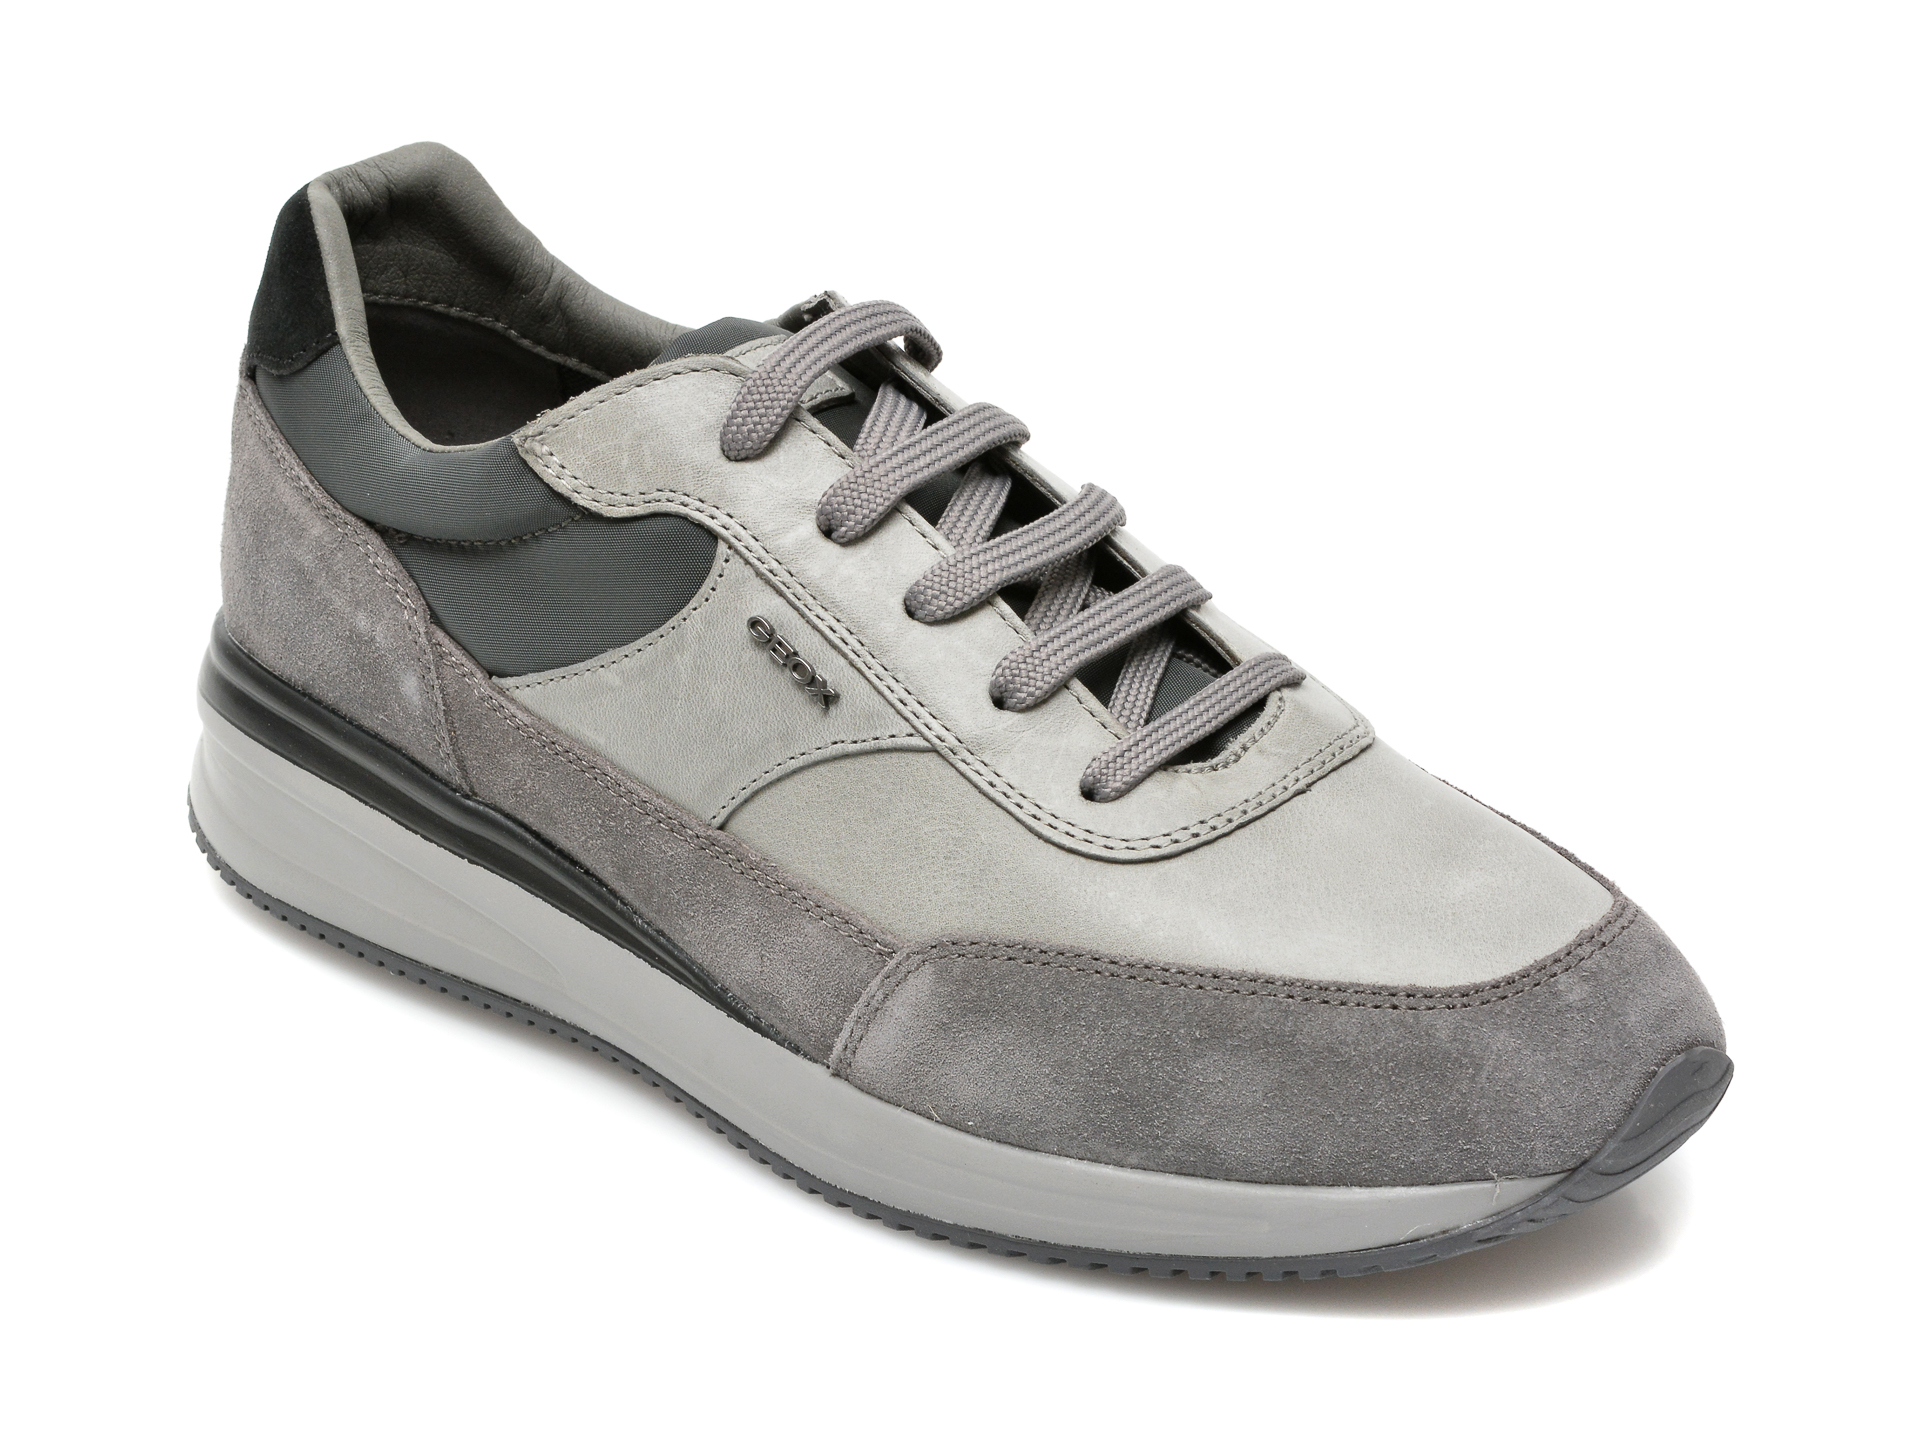 Pantofi GEOX gri, U150GA, din material textil si piele naturala Geox imagine noua